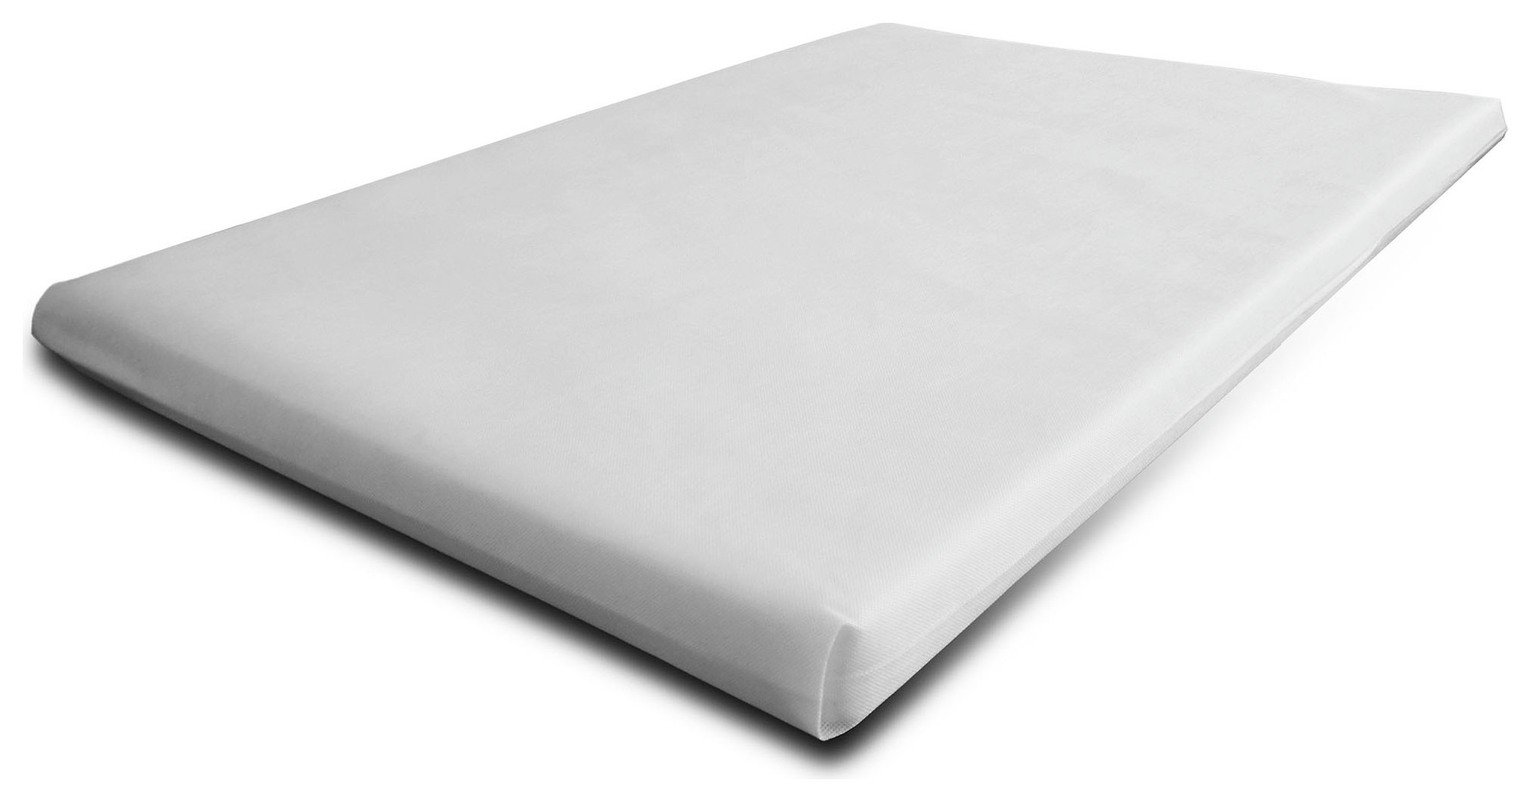 foam mattress for diwan cot